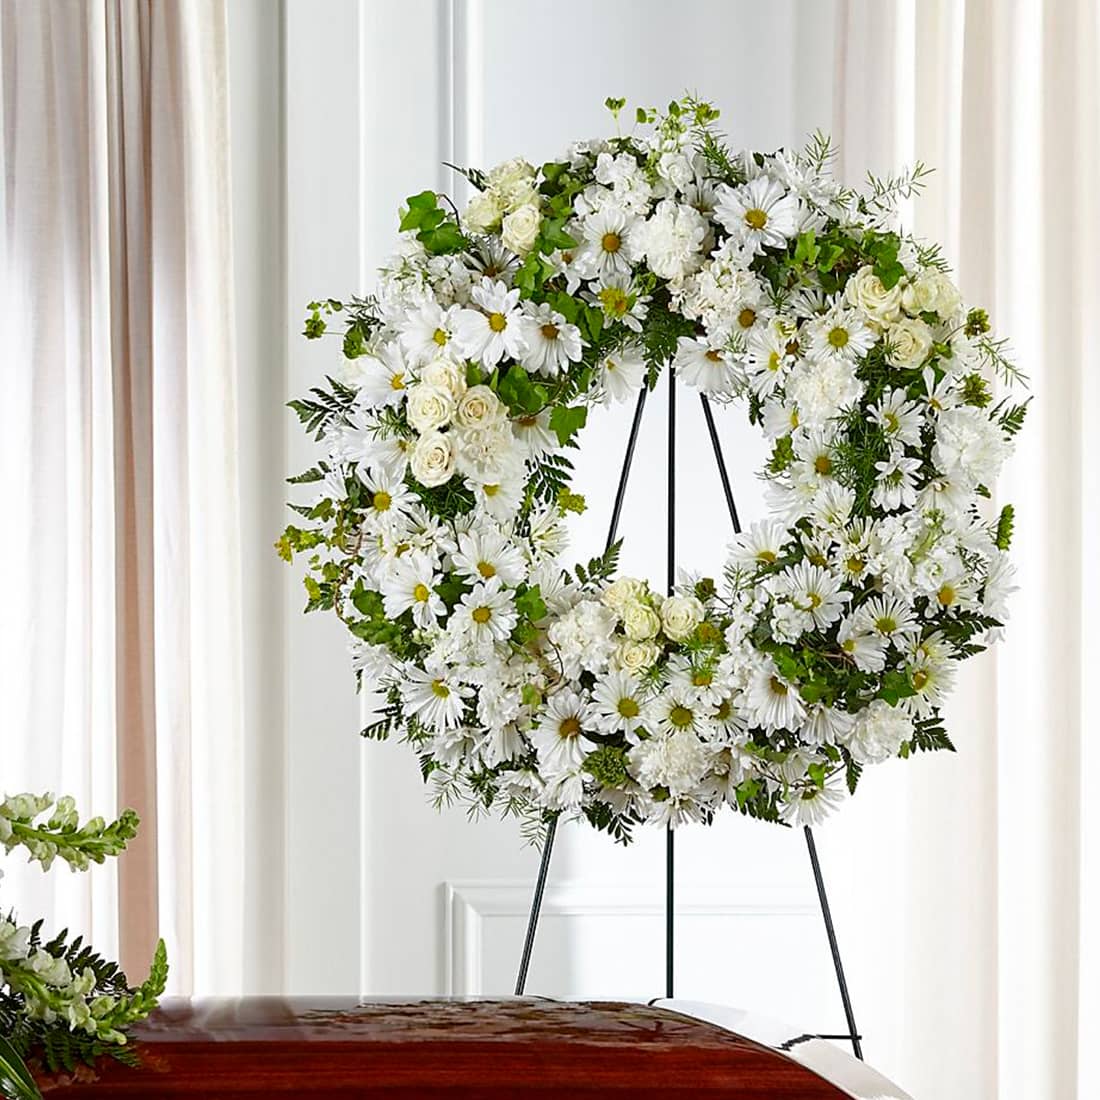 Fresh Flowers Orlando Regala Flores y Sonrrisas - Colección Sympathy and Funeral Flowers